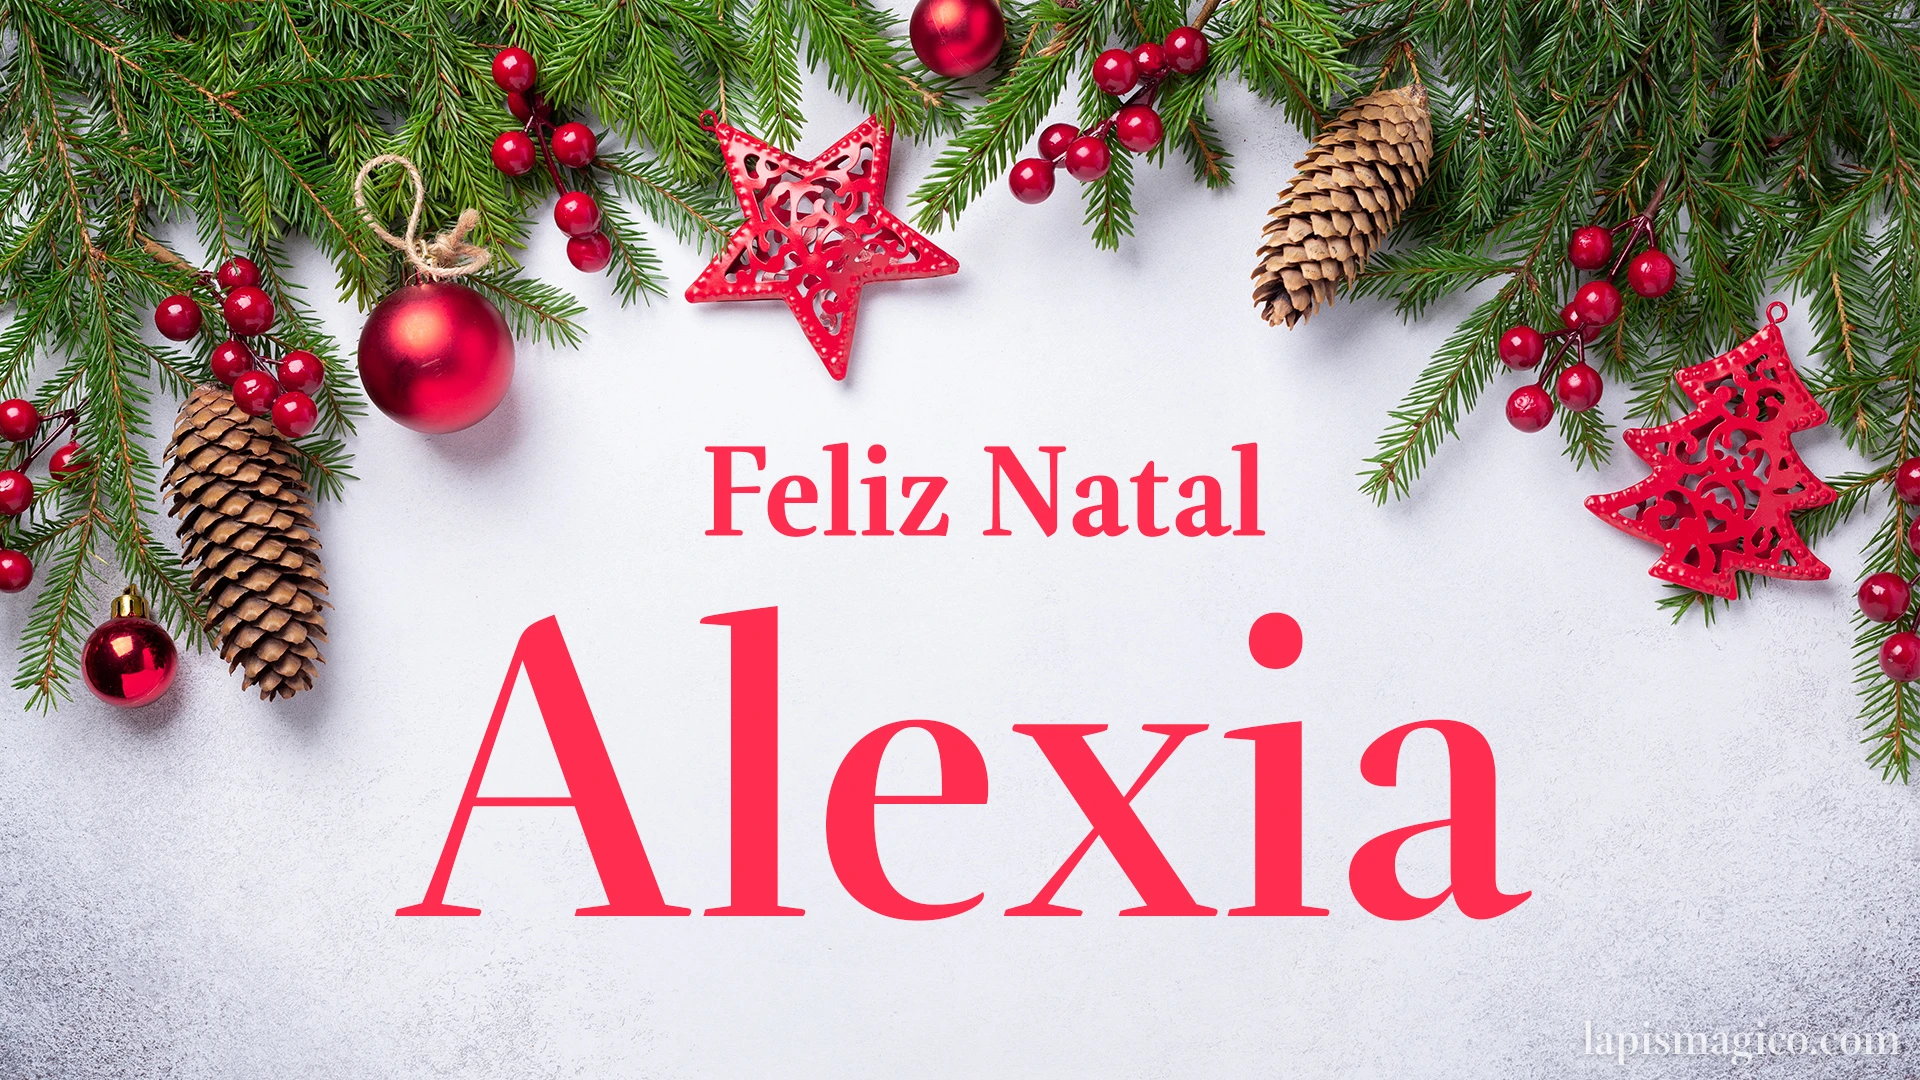 Oh Alexia, cinco postais de Feliz Natal Postal com o teu nome